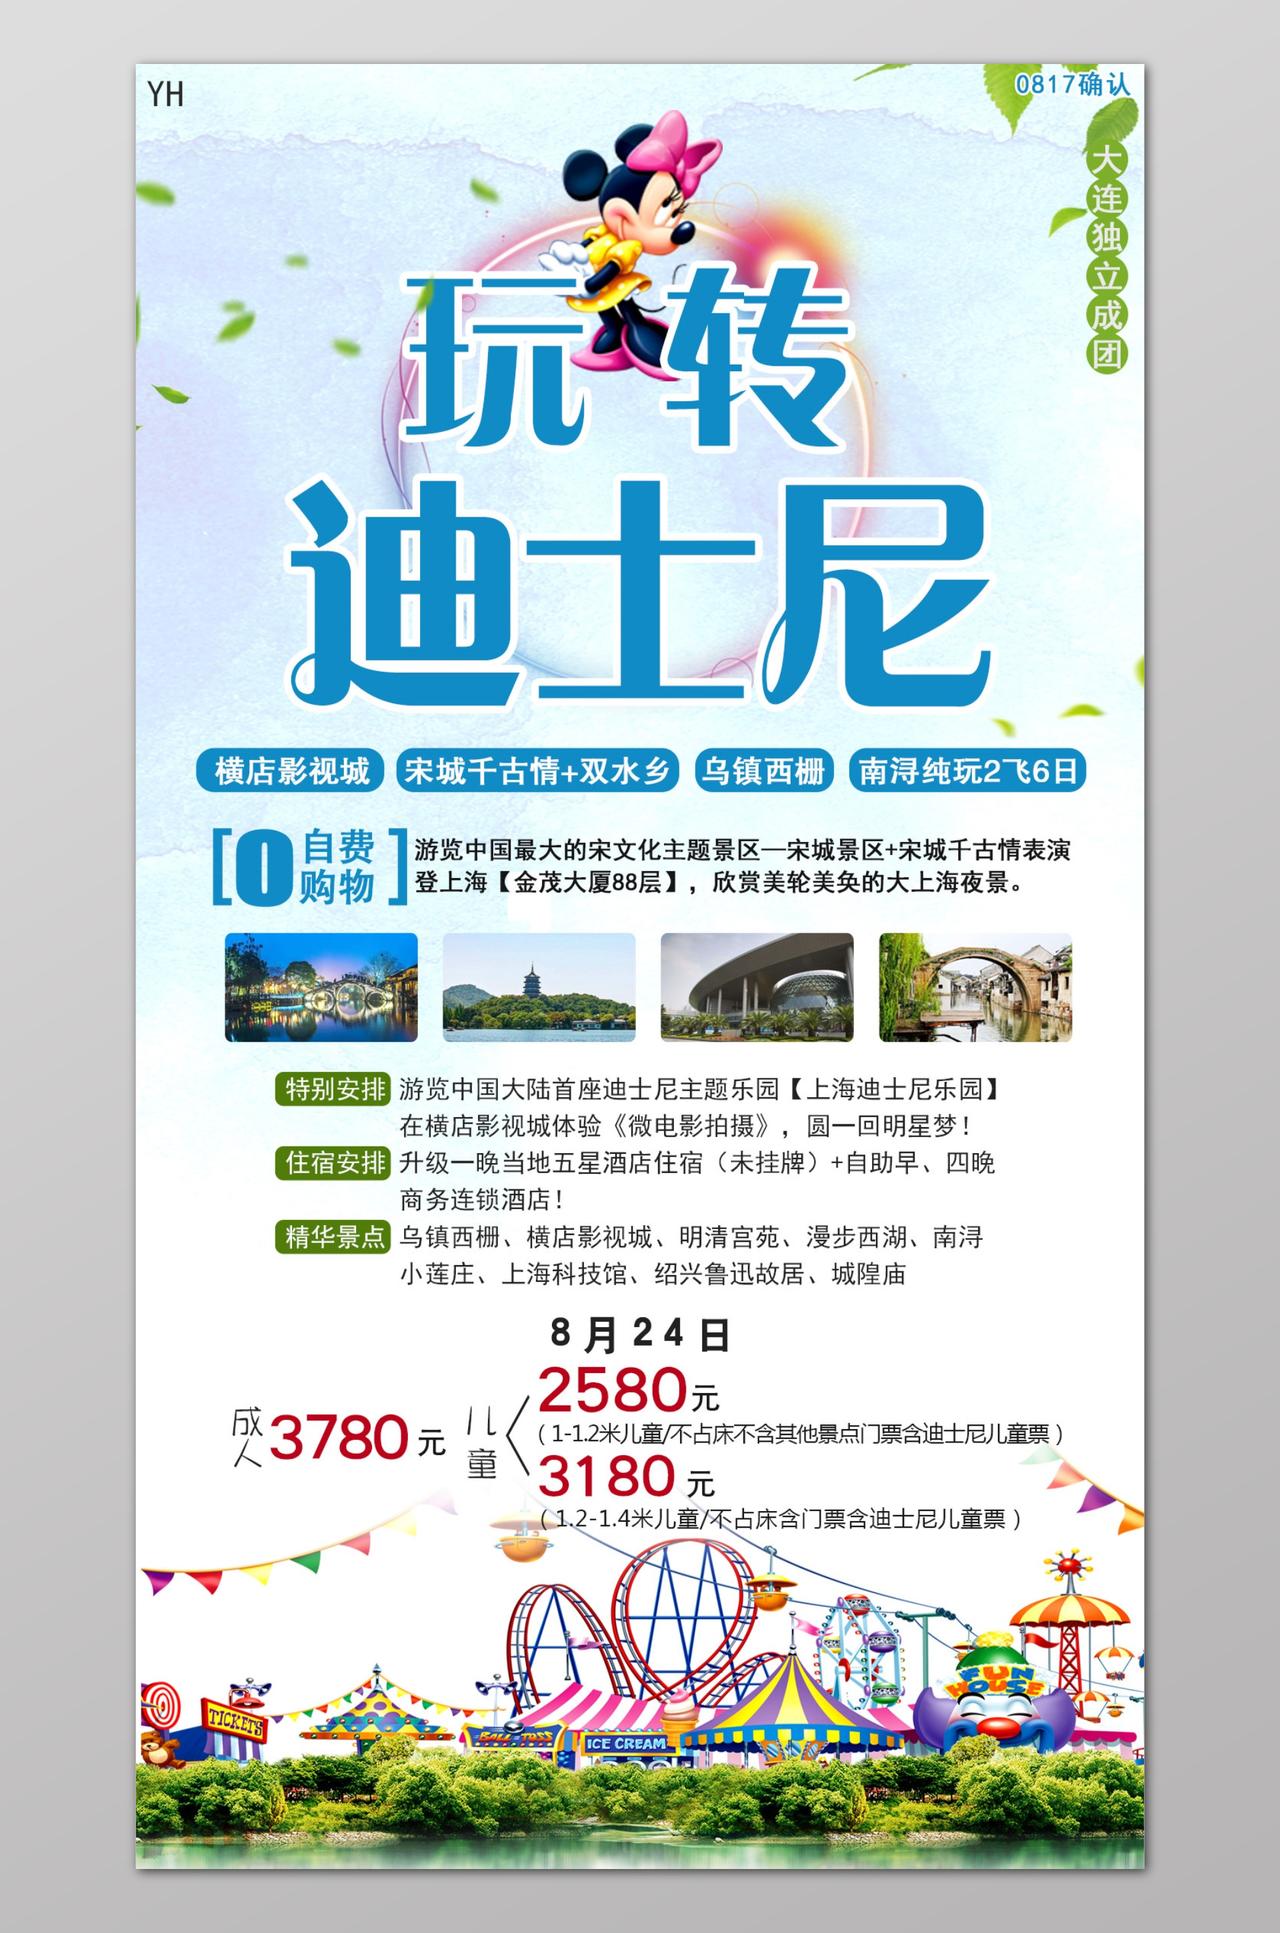 上海旅游上海印象玩转迪士尼宣传海报设计